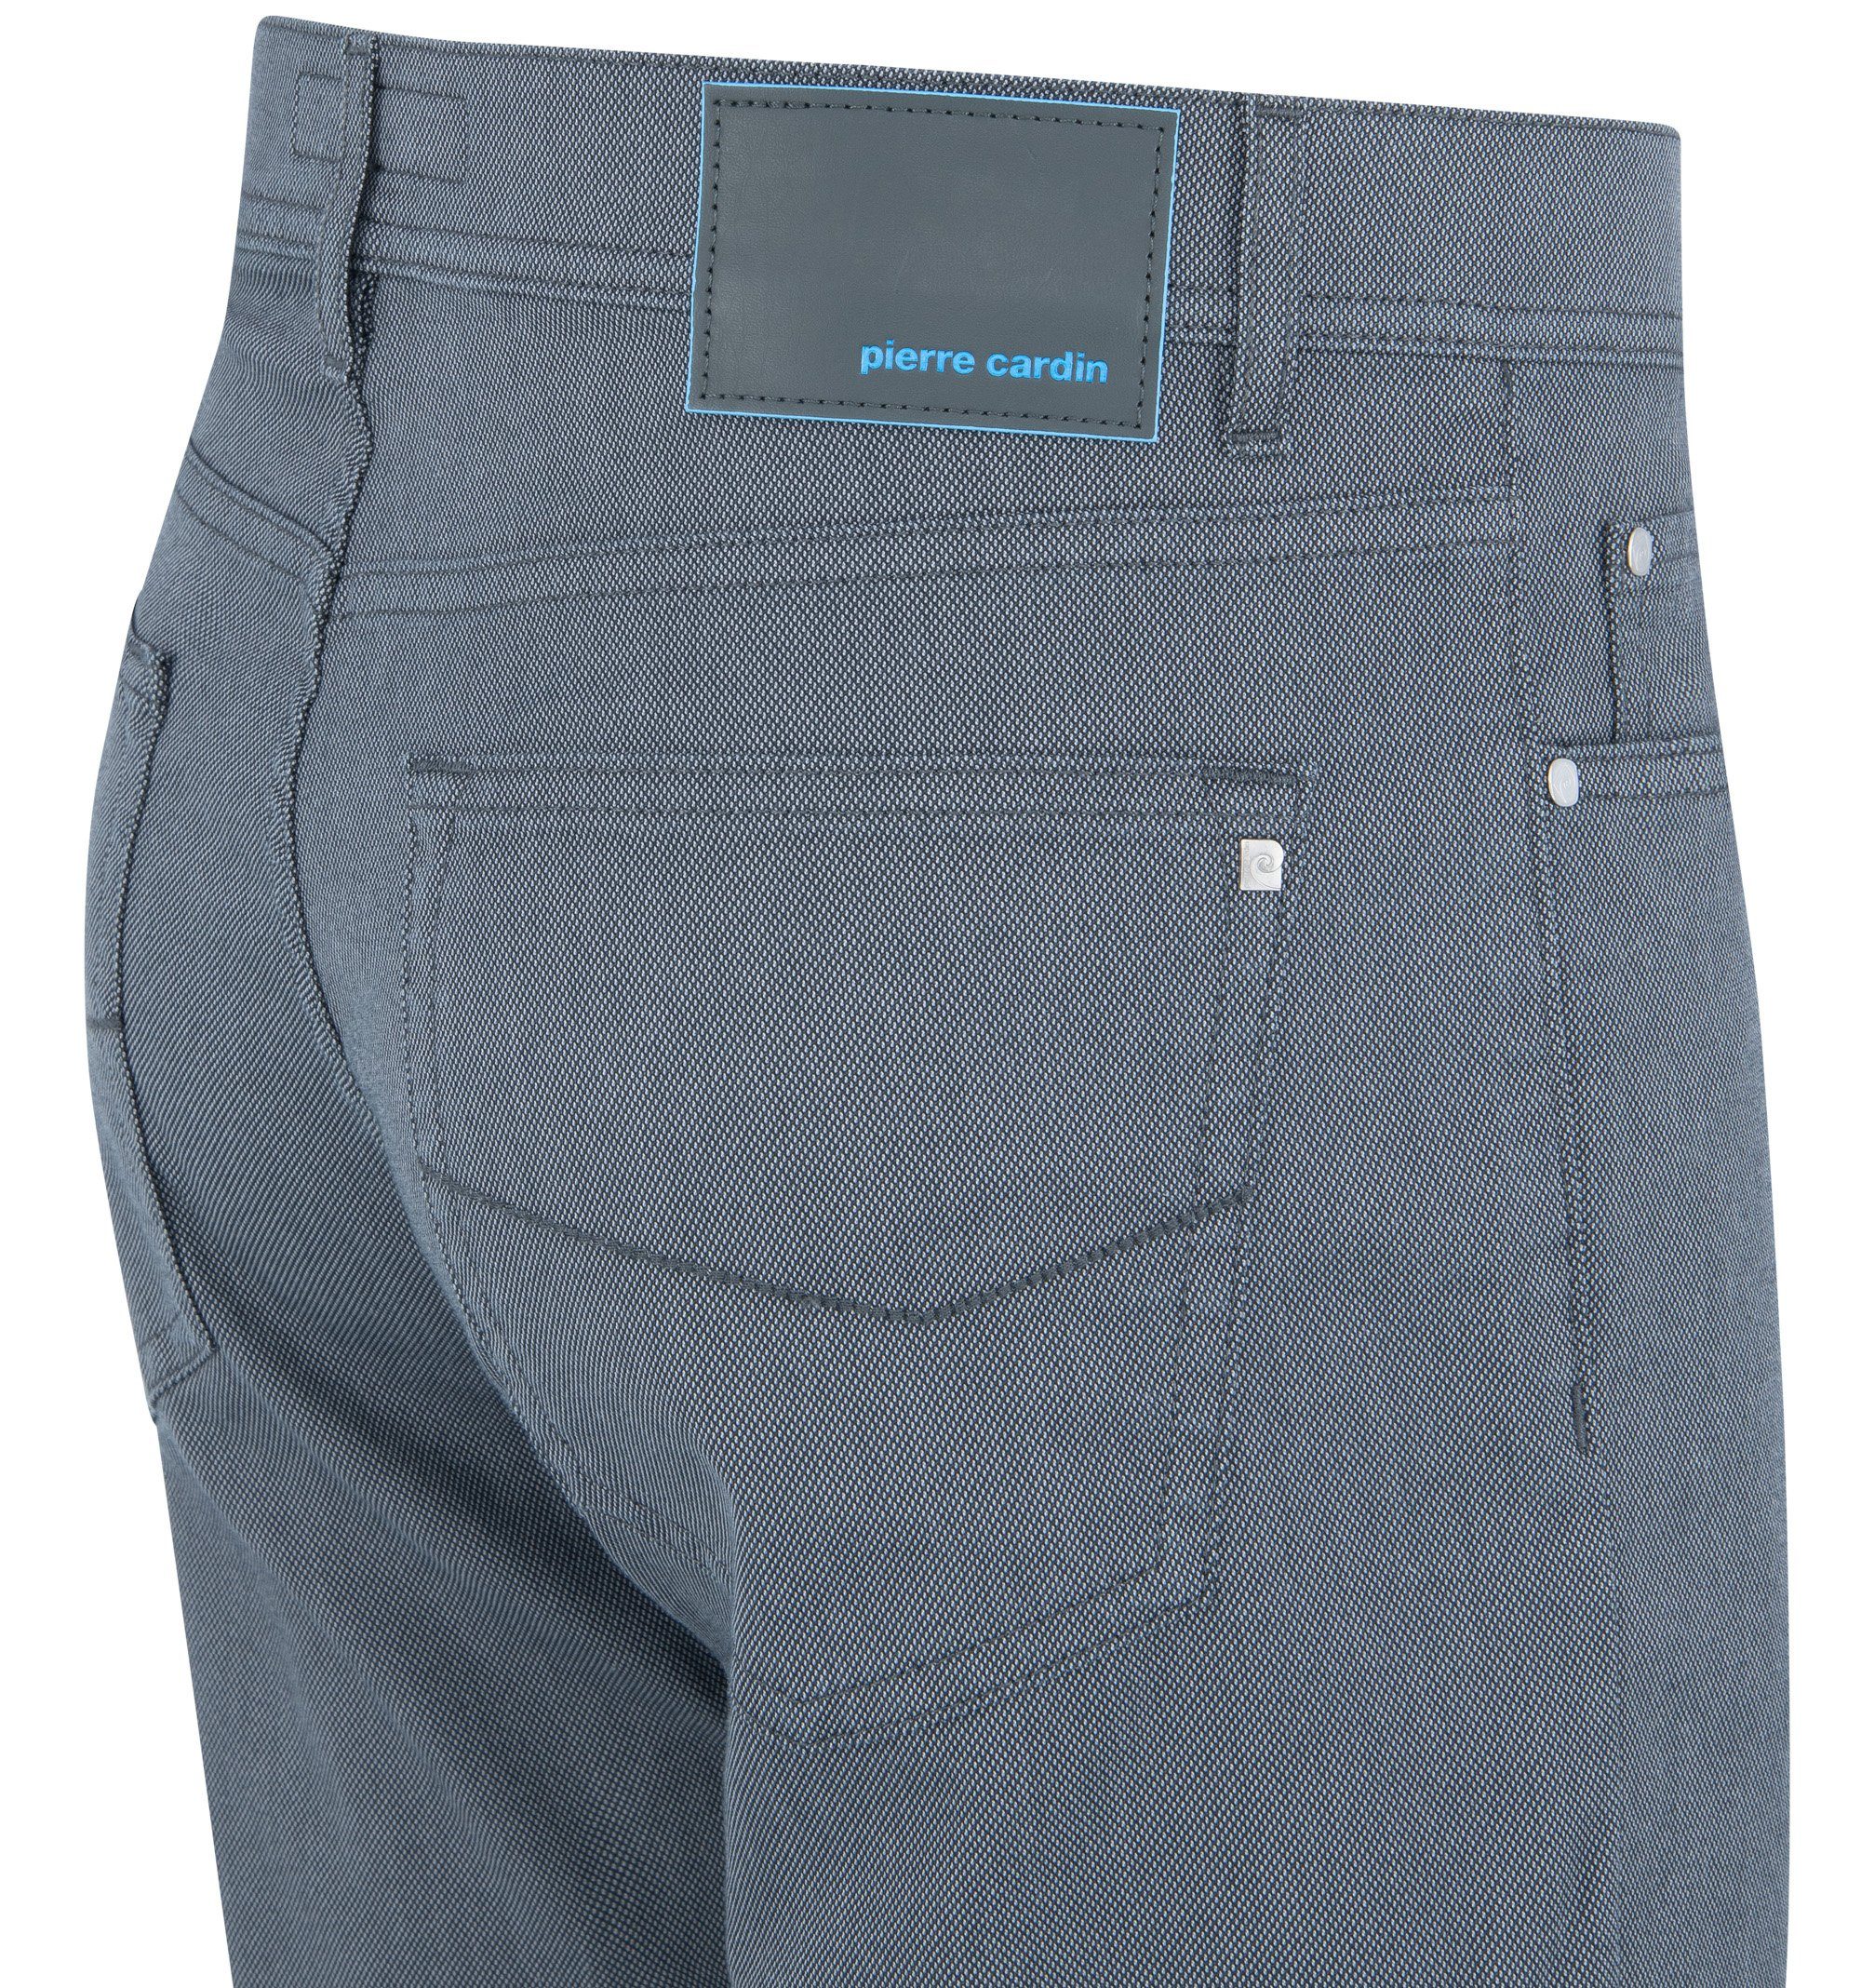 CARDIN PIERRE magnet Cardin 5-Pocket-Jeans LYON 30940 1017.9315 Pierre